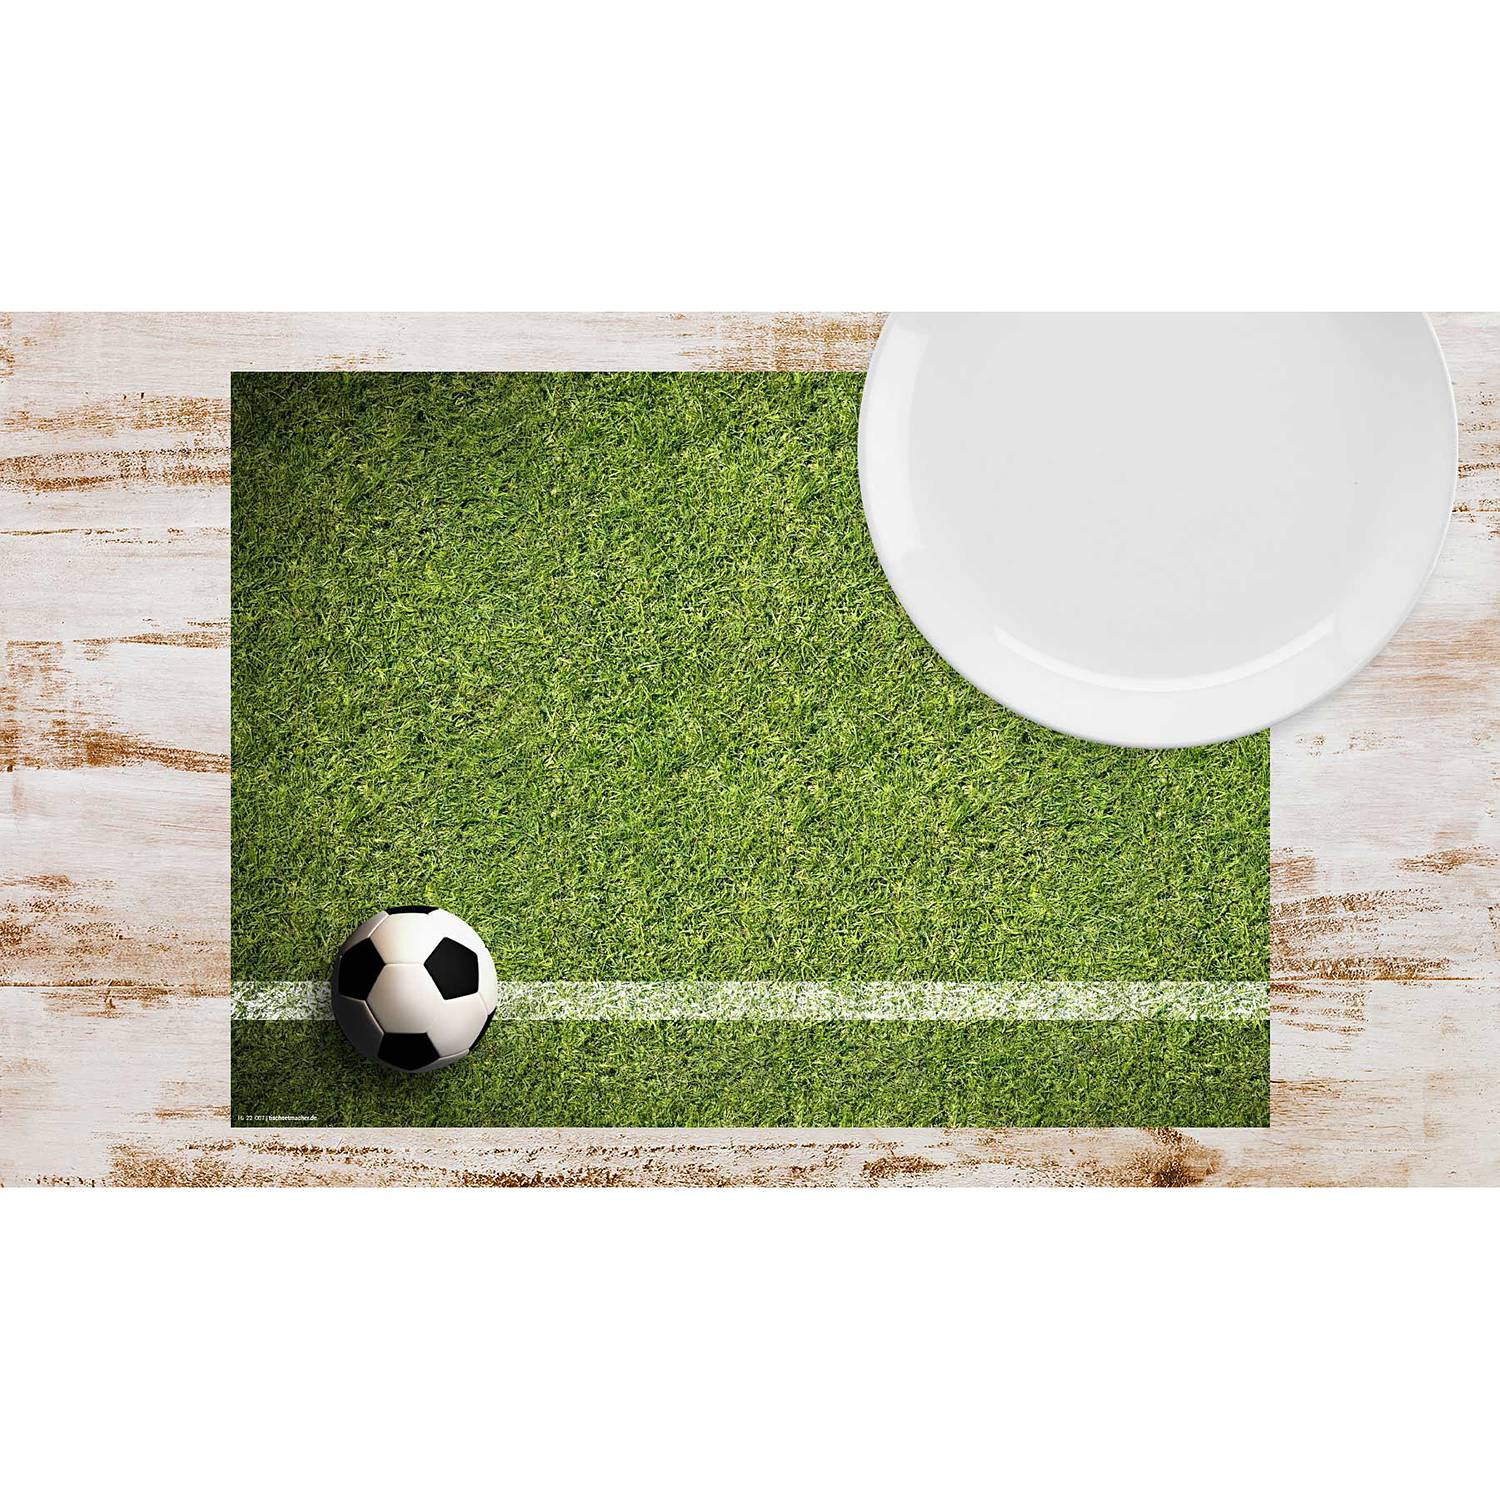 Tischset Fussball auf Rasen (12er-Set) von tischsetmacher